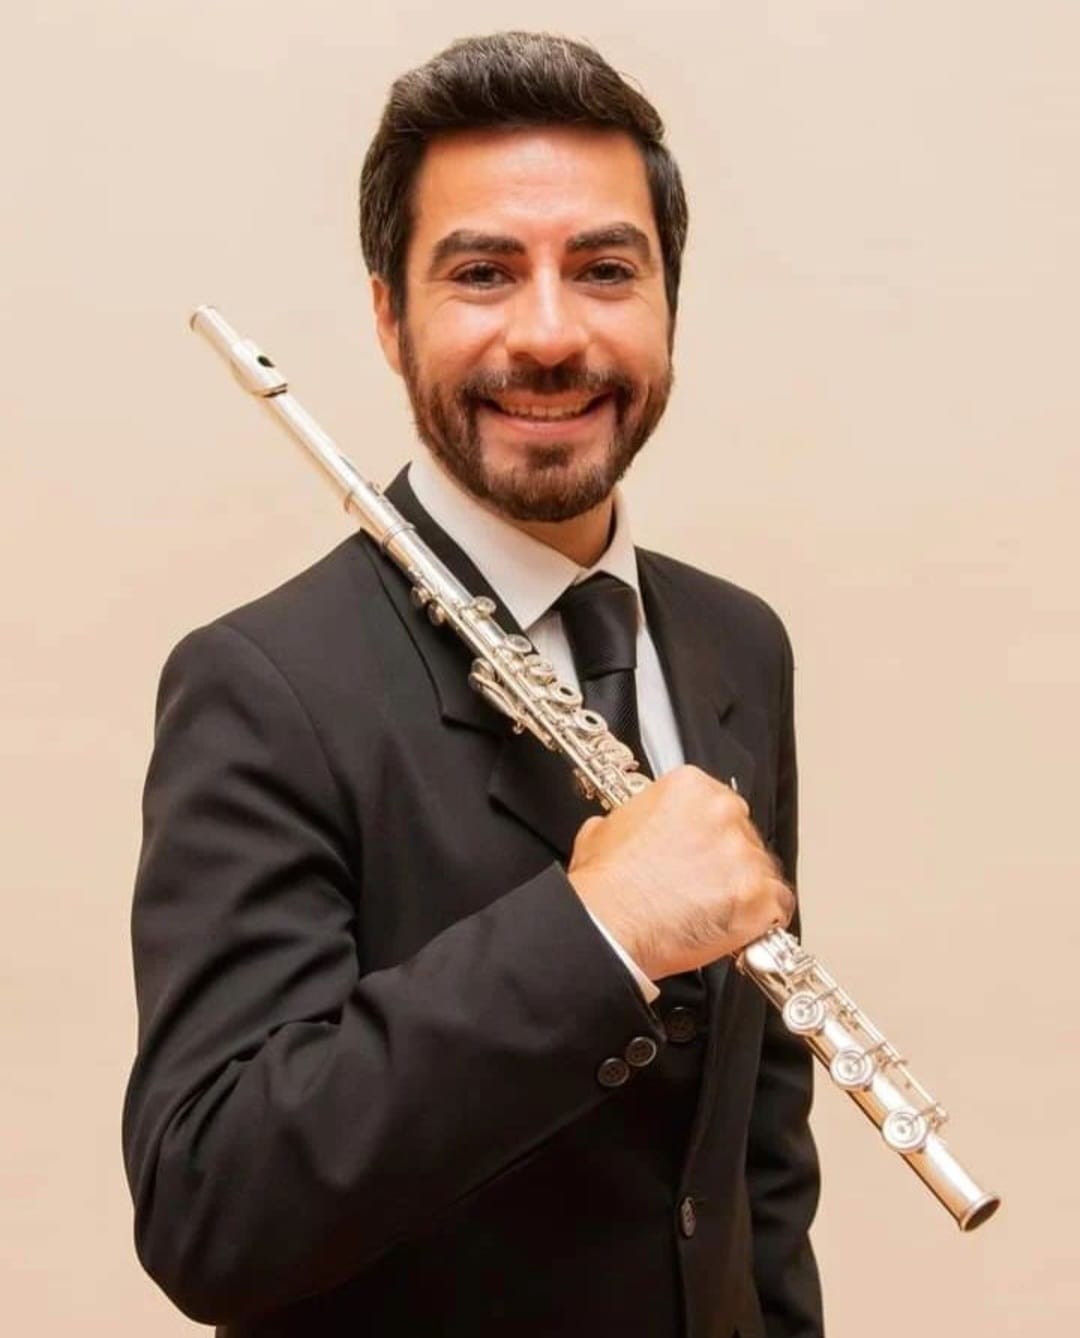 Gerardo Bluhm es egresado del Departamento de Música y se desempeña en el cargo de Primer Flauta Solista en la Orquesta Sinfónica de La Serena y docente en la Academia de Música Pedro Aguirre Cerda y en la Fundación de Orquestas Juveniles e Infantiles de Chile.